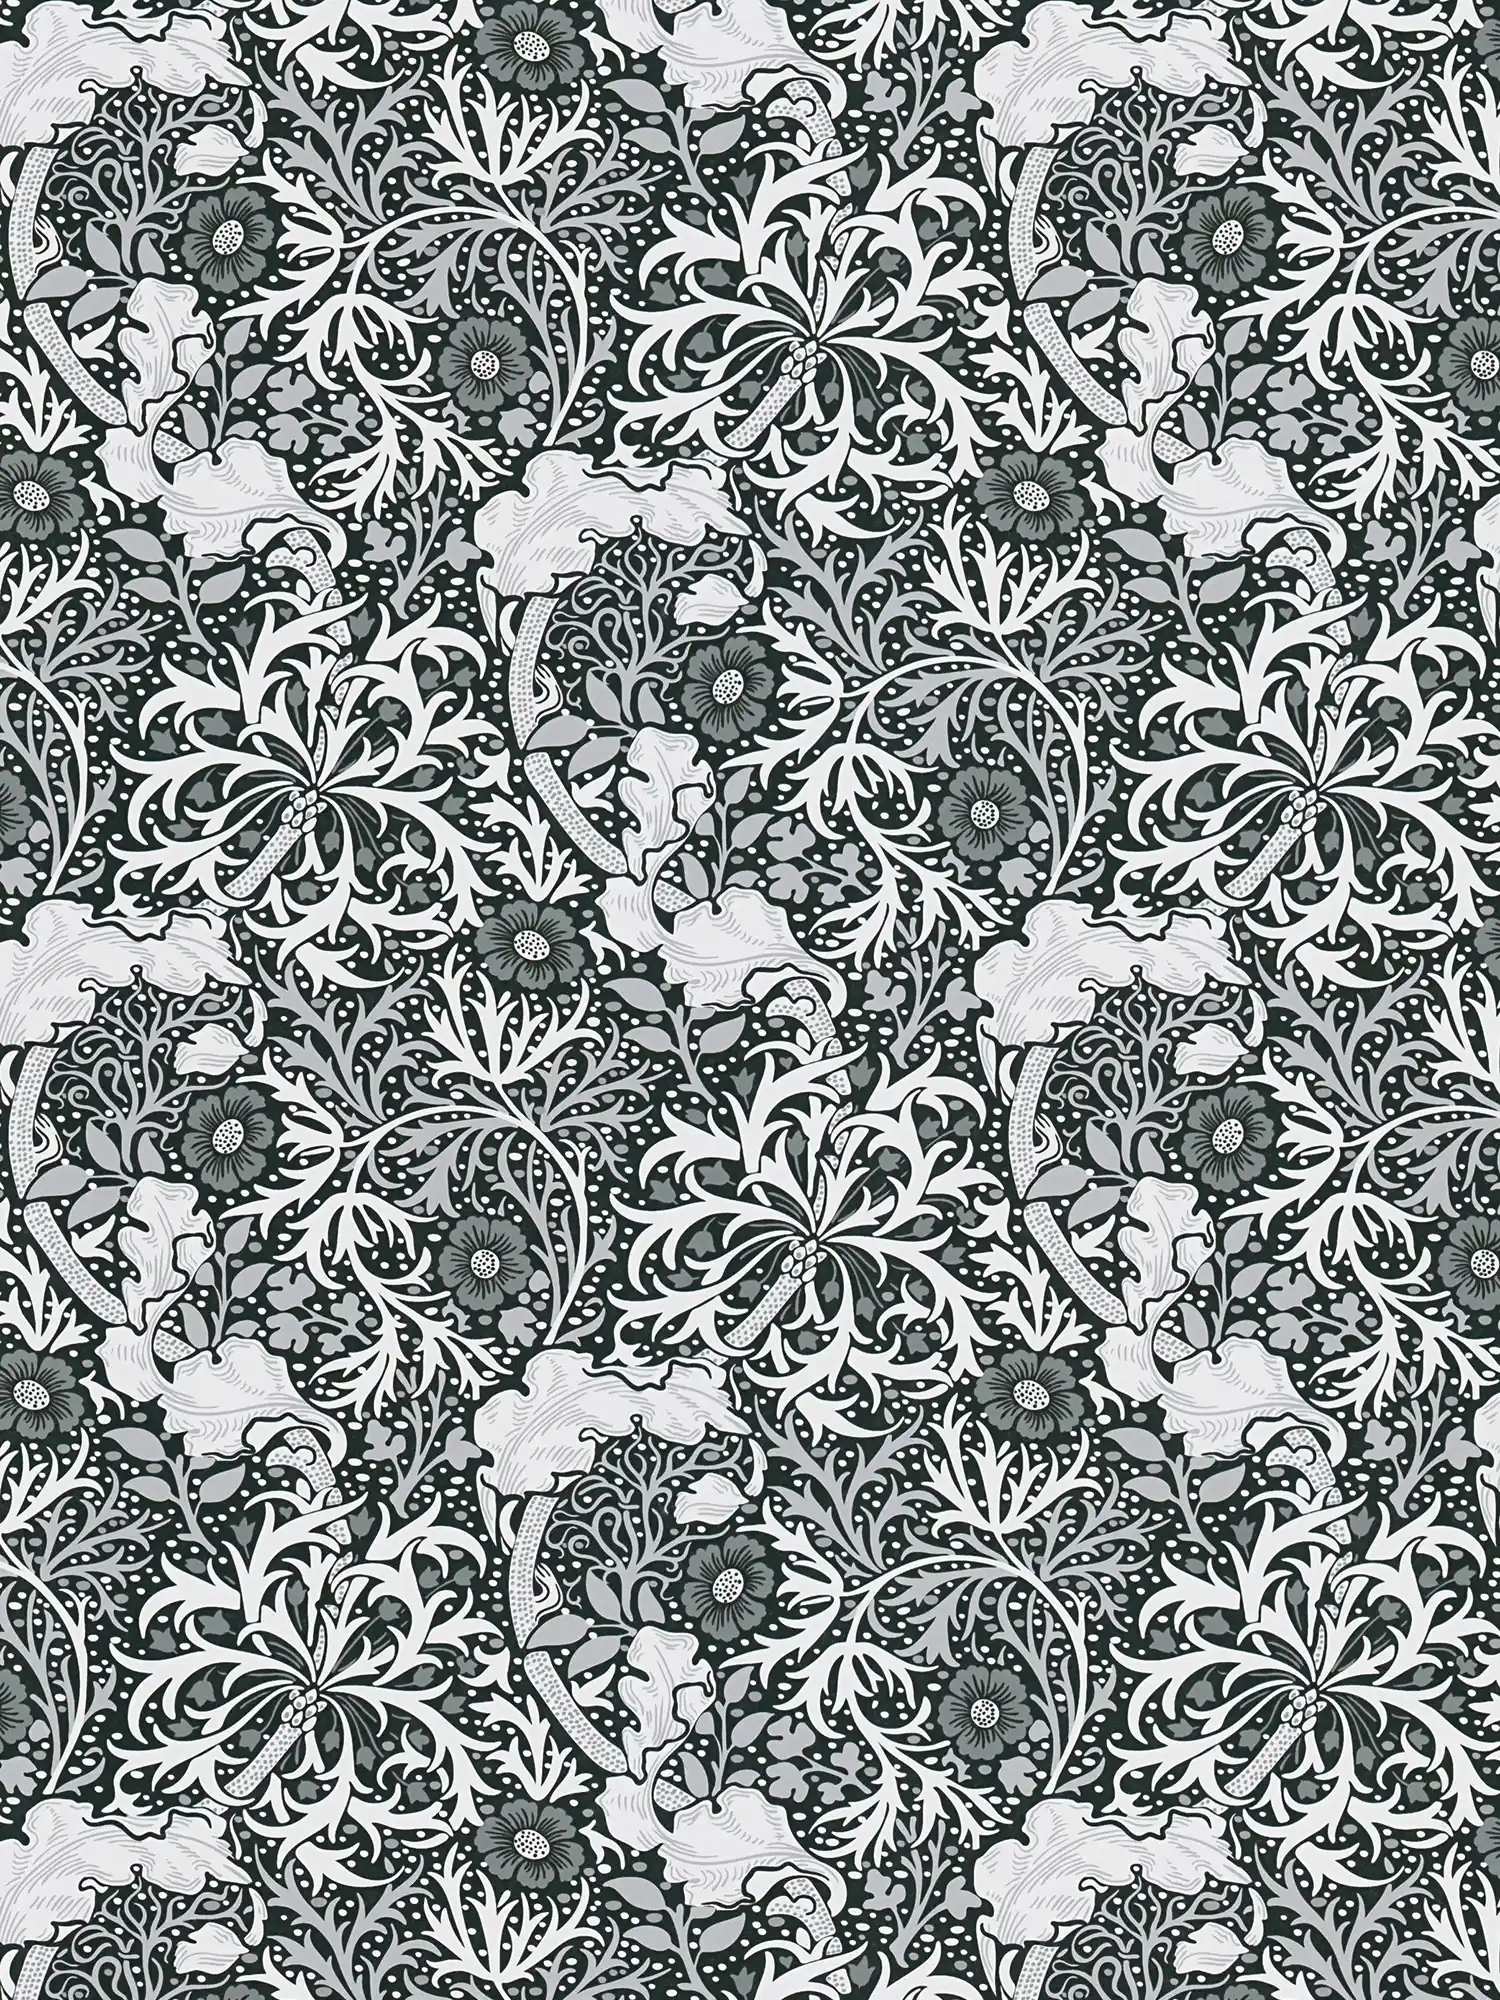 Papel pintado no tejido con motivos florales de vides y flores - blanco, negro, gris
